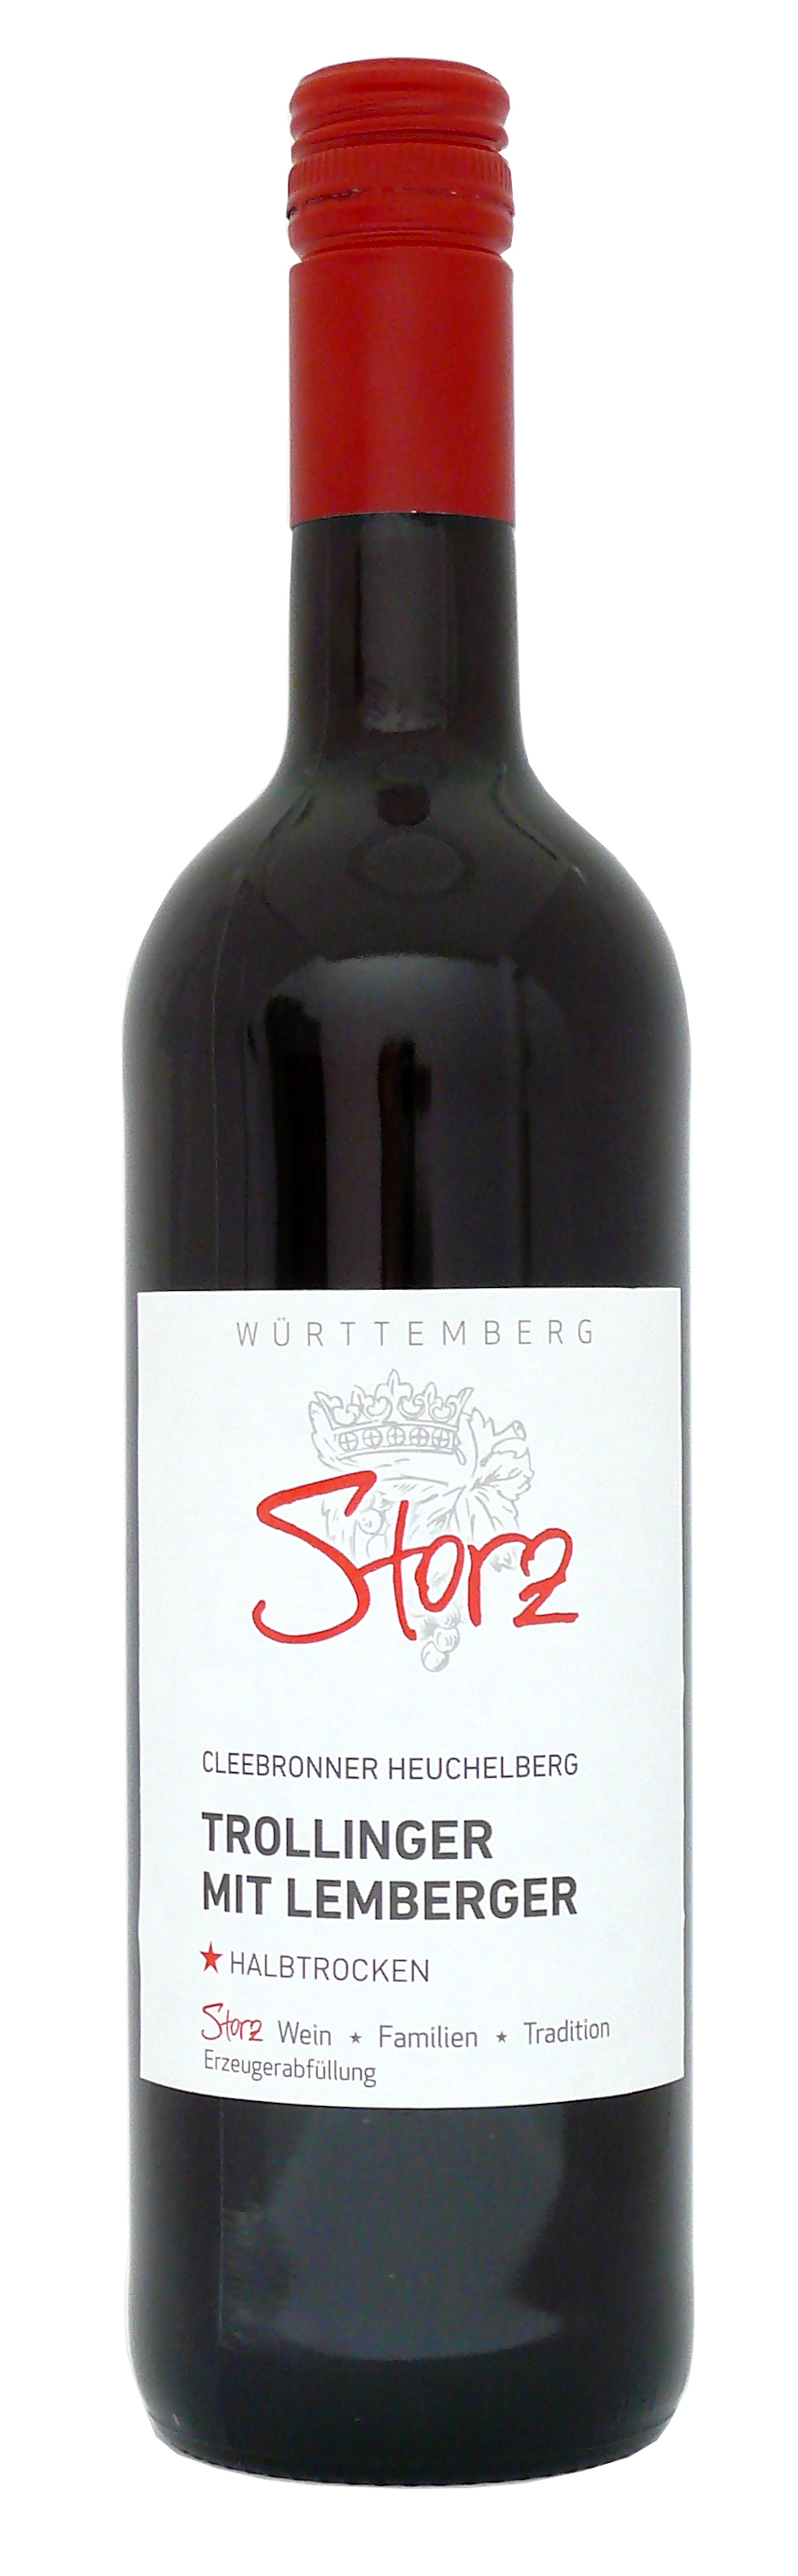 Storz ▻ Trollinger mit Lemberger halbtrocken Cleebronner 0,75 L | Weine  direkt vom Winzer - Württemberger Weine